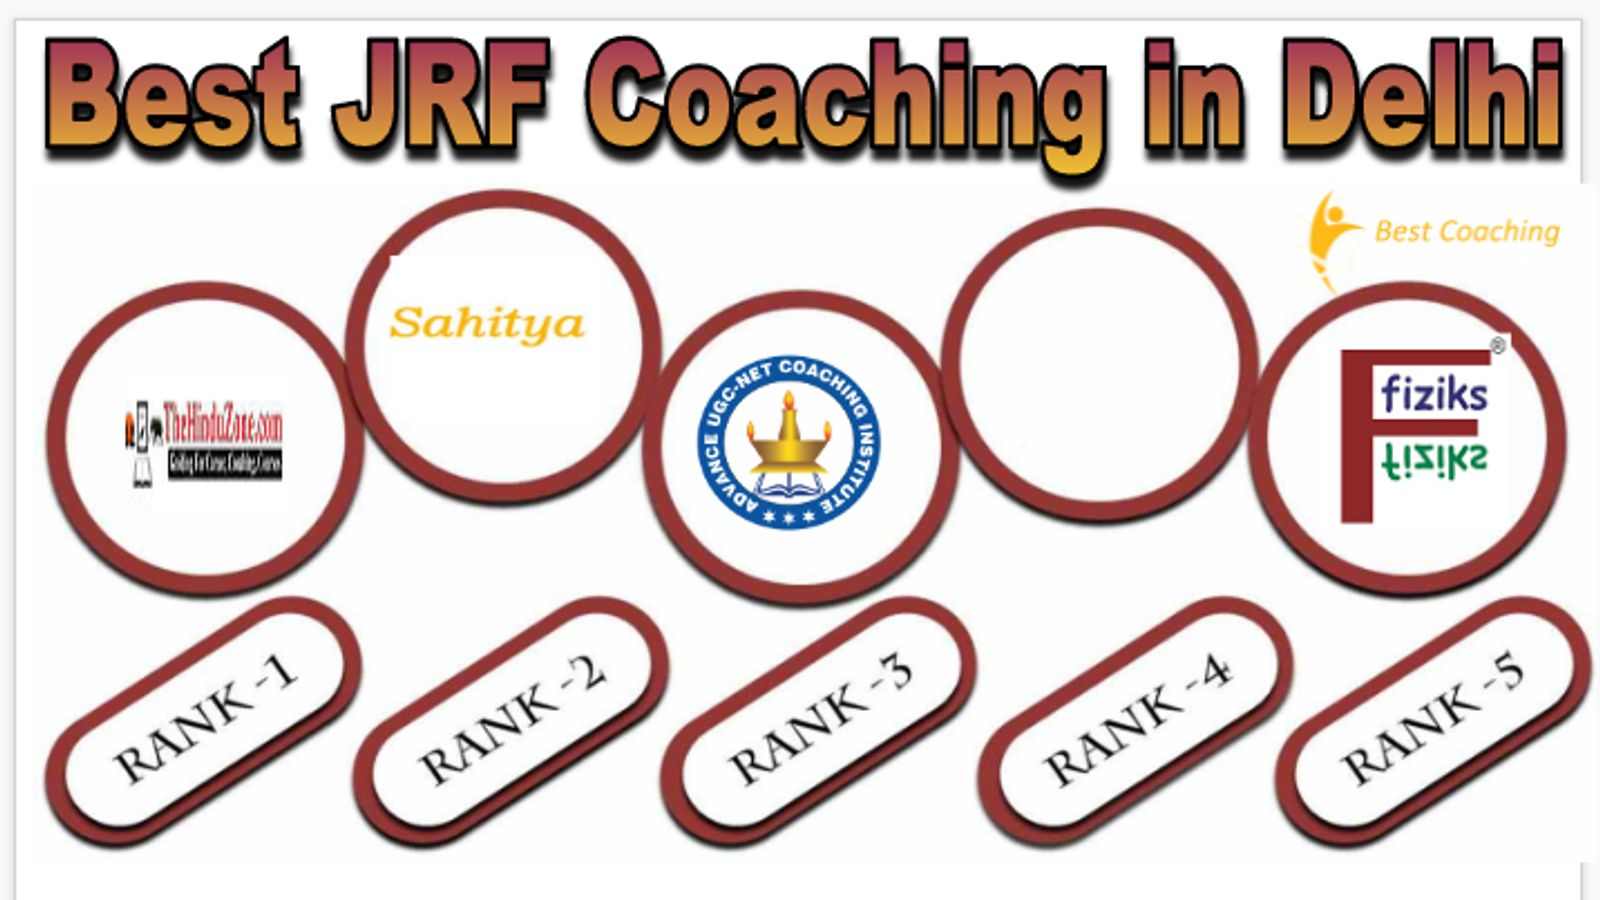 Best JRF Coaching in Delhi